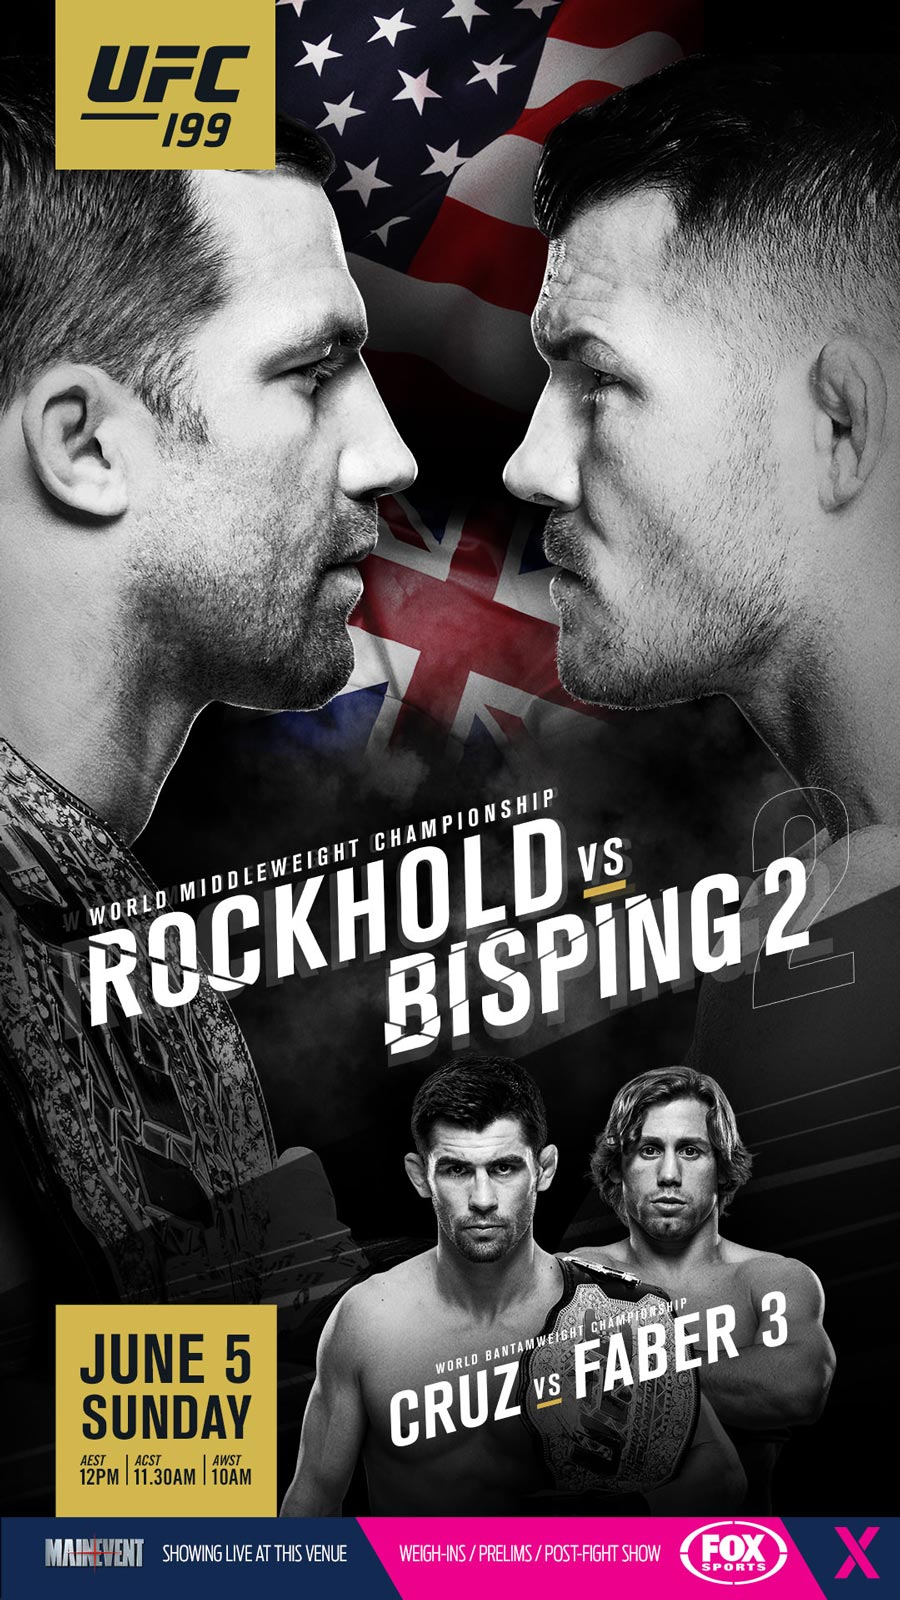 UFC 199 Rockhold Bisping 2